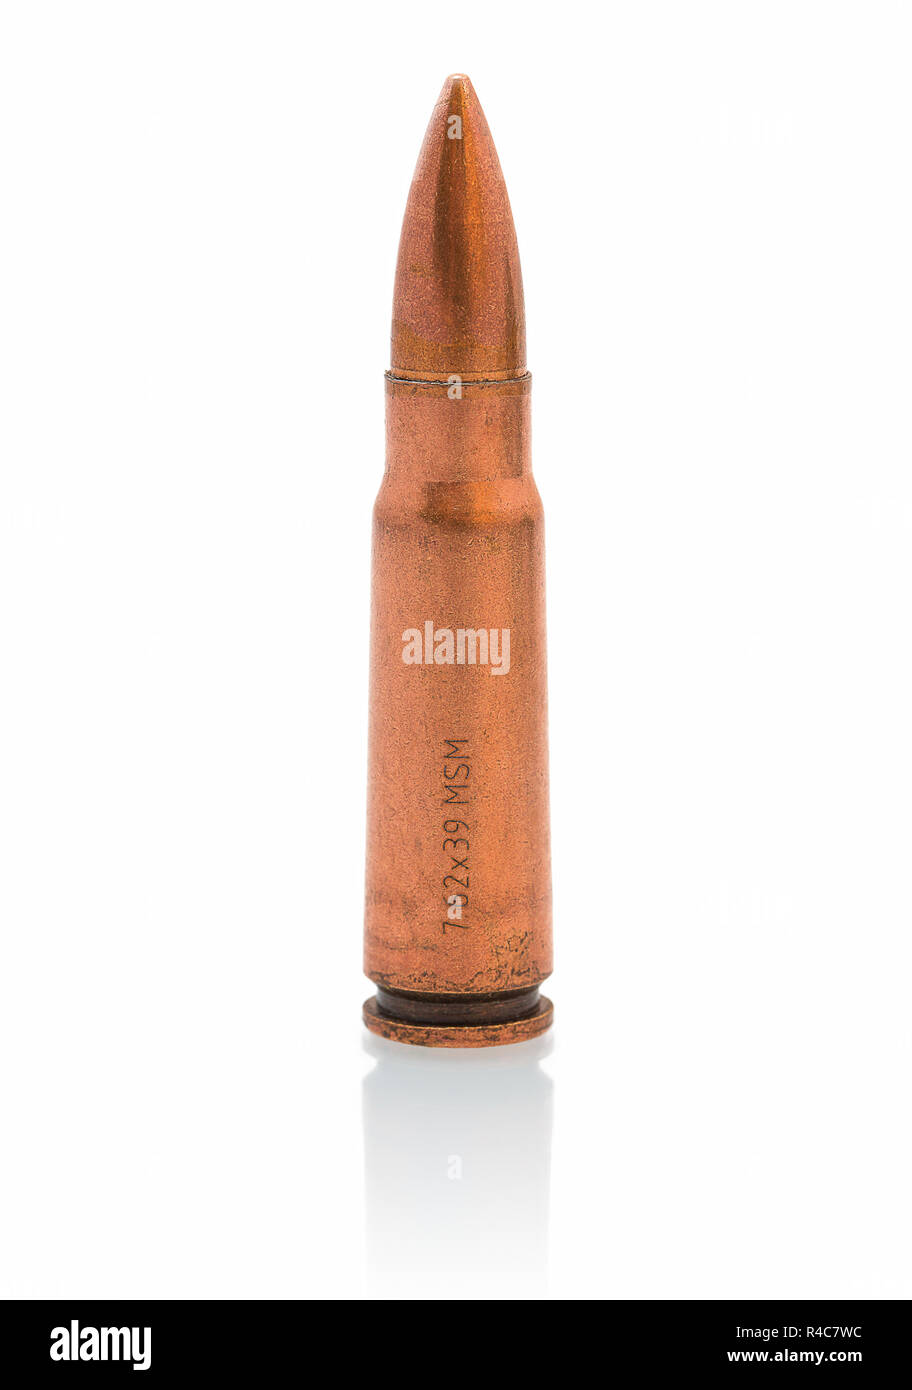 Balle de calibre 7,62 mm isolé sur fond blanc avec ombre de réflexion.  Réservoirs sous munitions pour fusils d'assaut Kalachnikov AK-47 comme la  République tchèque Photo Stock - Alamy